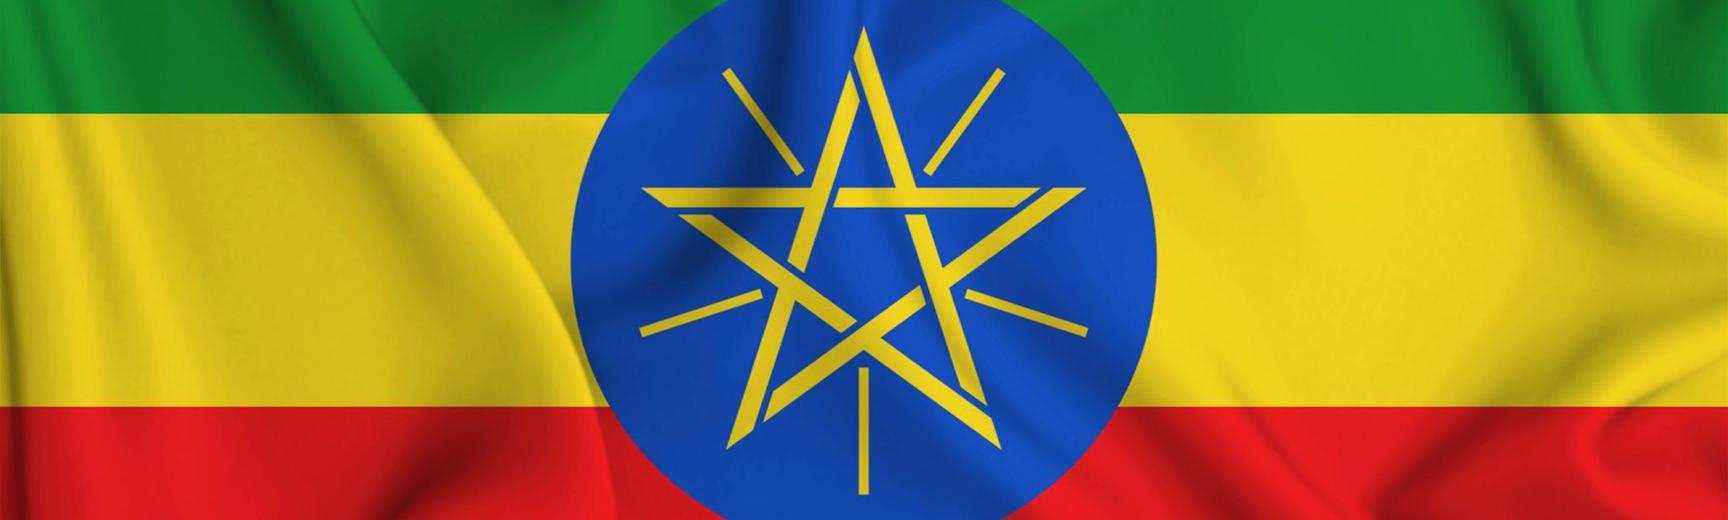 ethiopian hall